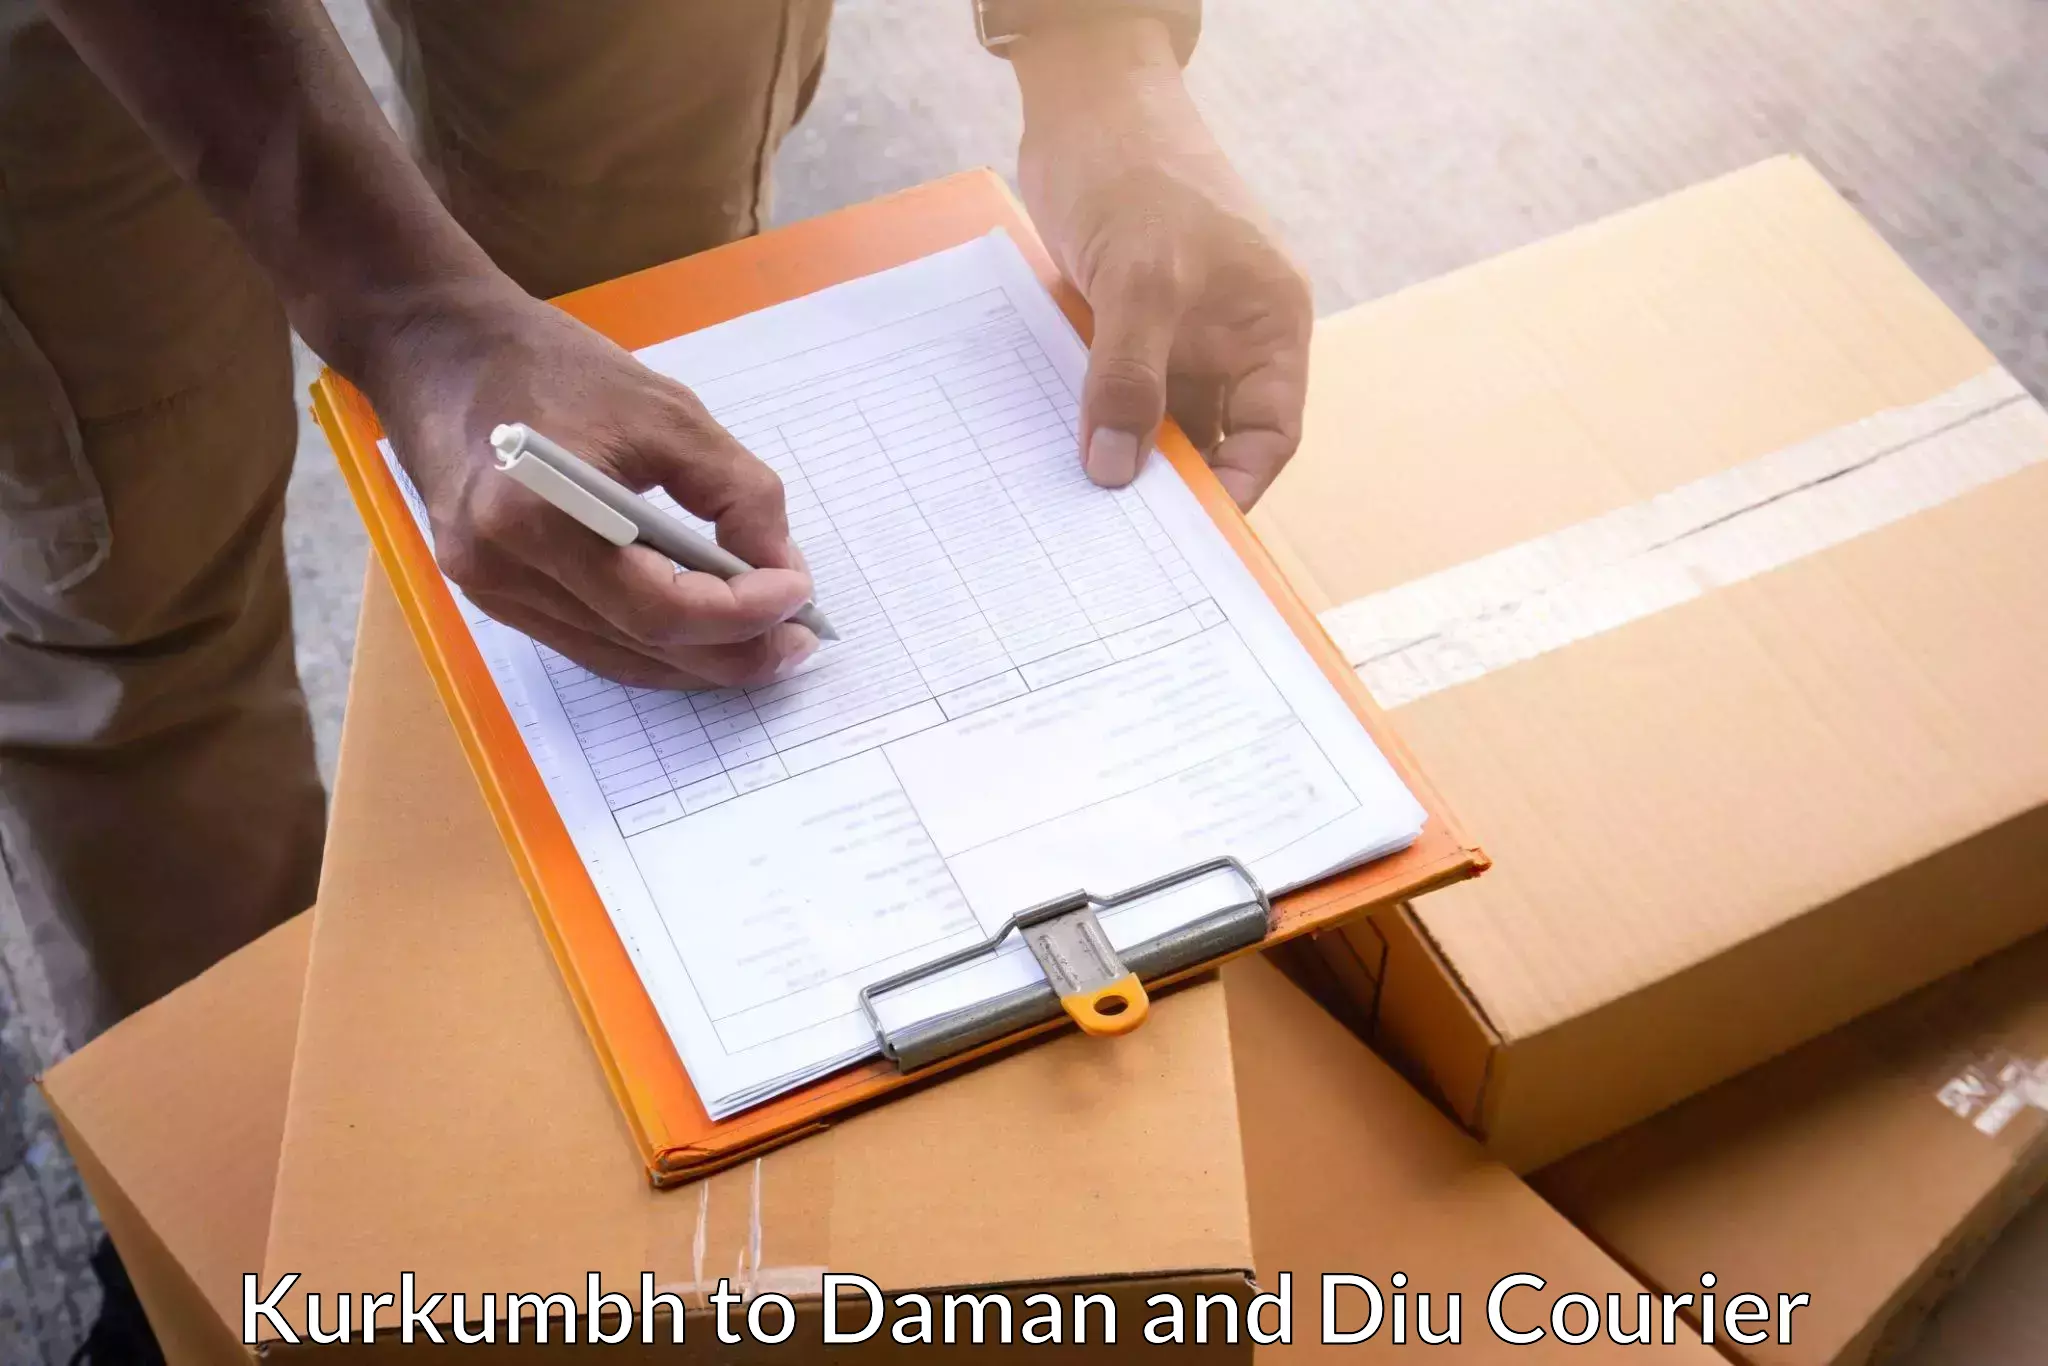 Express courier capabilities Kurkumbh to Daman